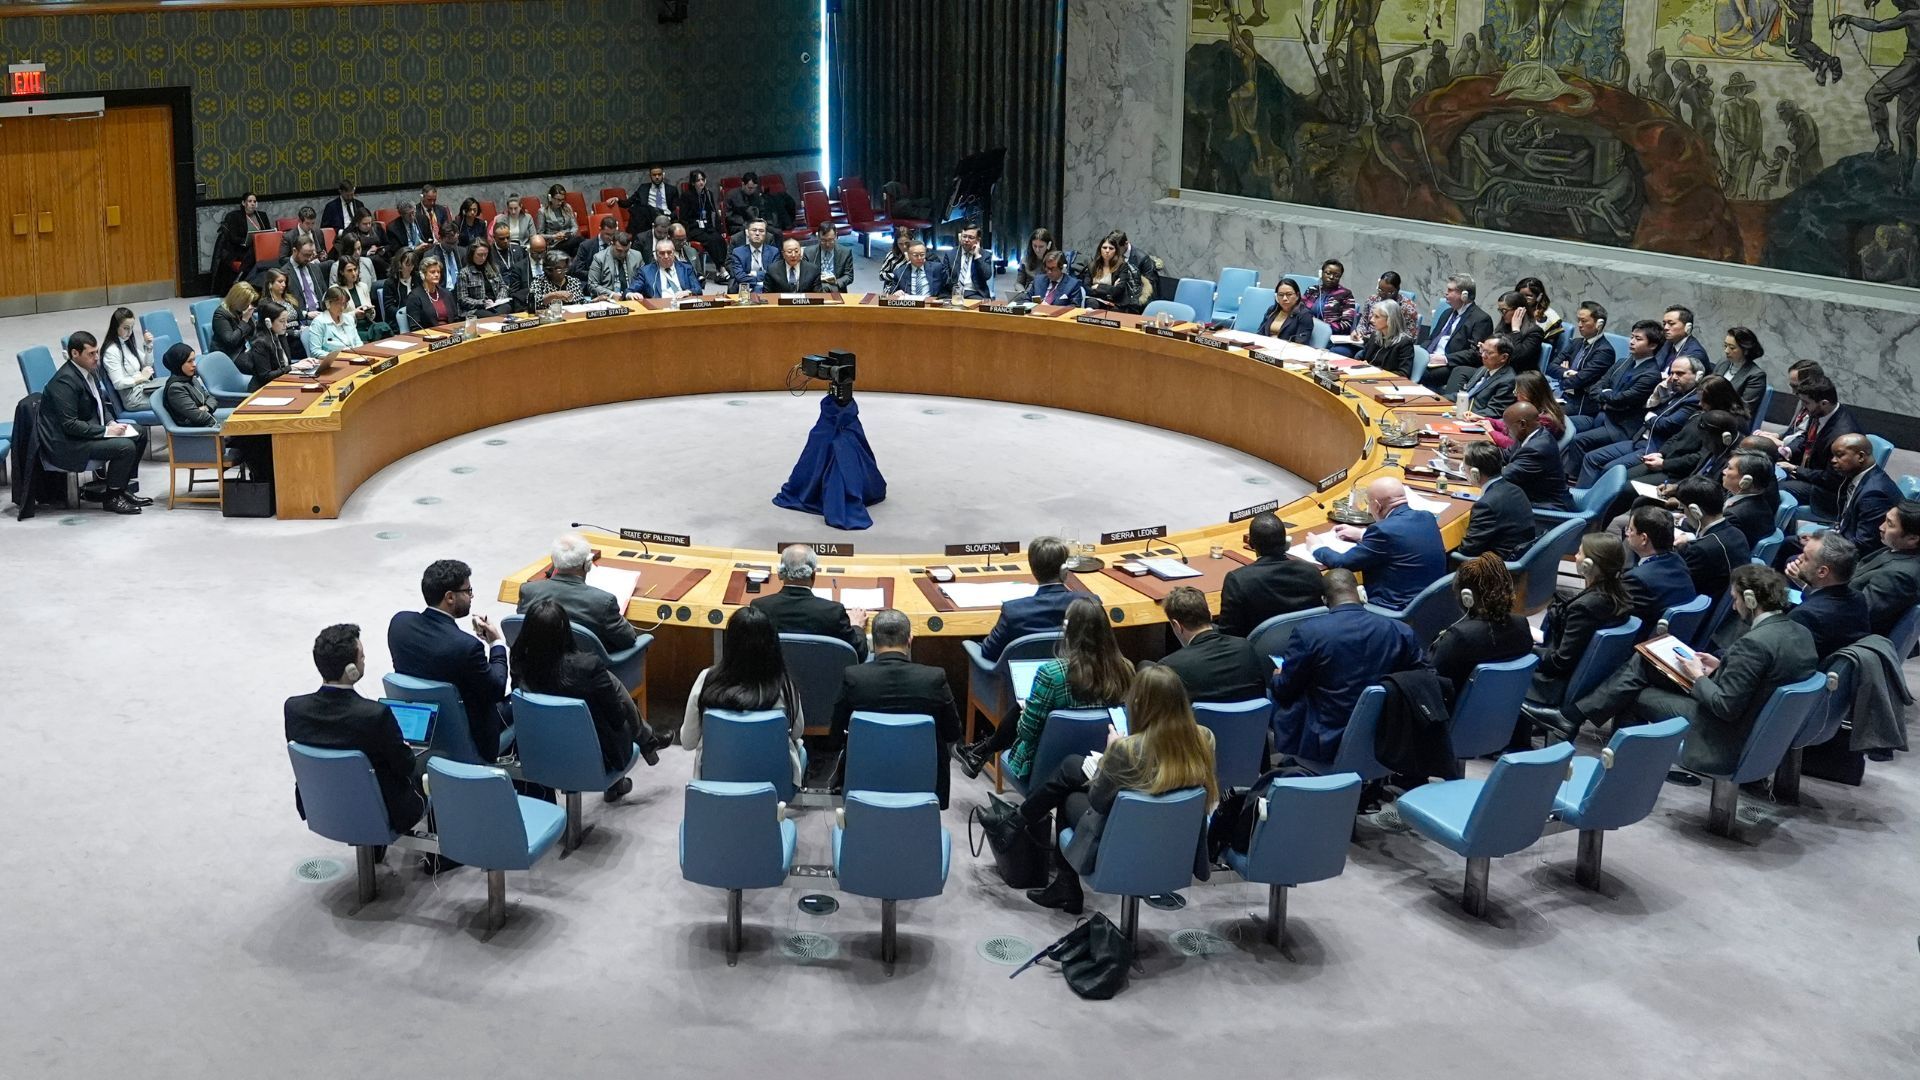 Con il loro record di veto sulla tregua a Gaza, gli Stati Uniti svelano una misteriosa nuova risoluzione delle Nazioni Unite  Notizie della guerra israeliana a Gaza